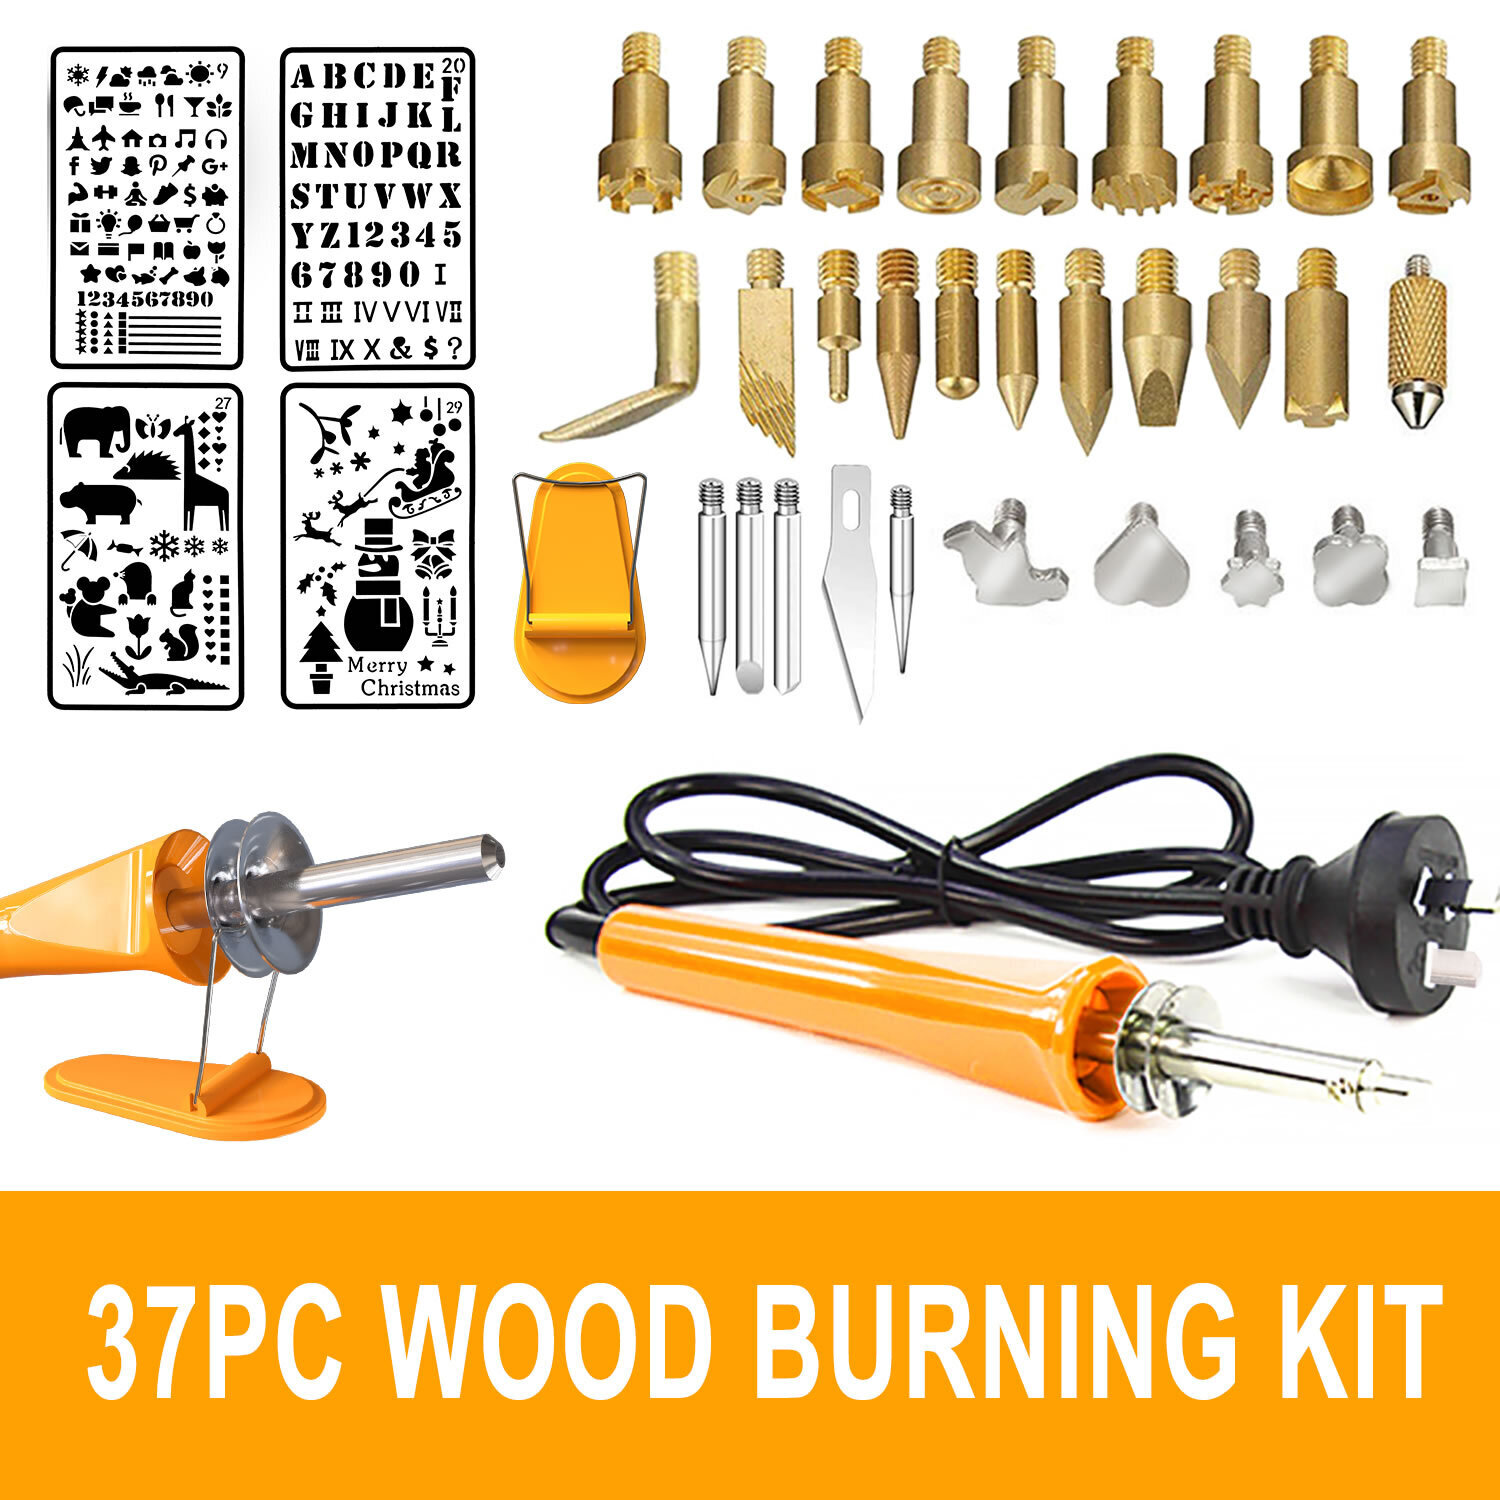 MasterSpec 37PC 30W Wood Burning Set Electric Soldering Iron Kit Iron Burner Hobby Kit